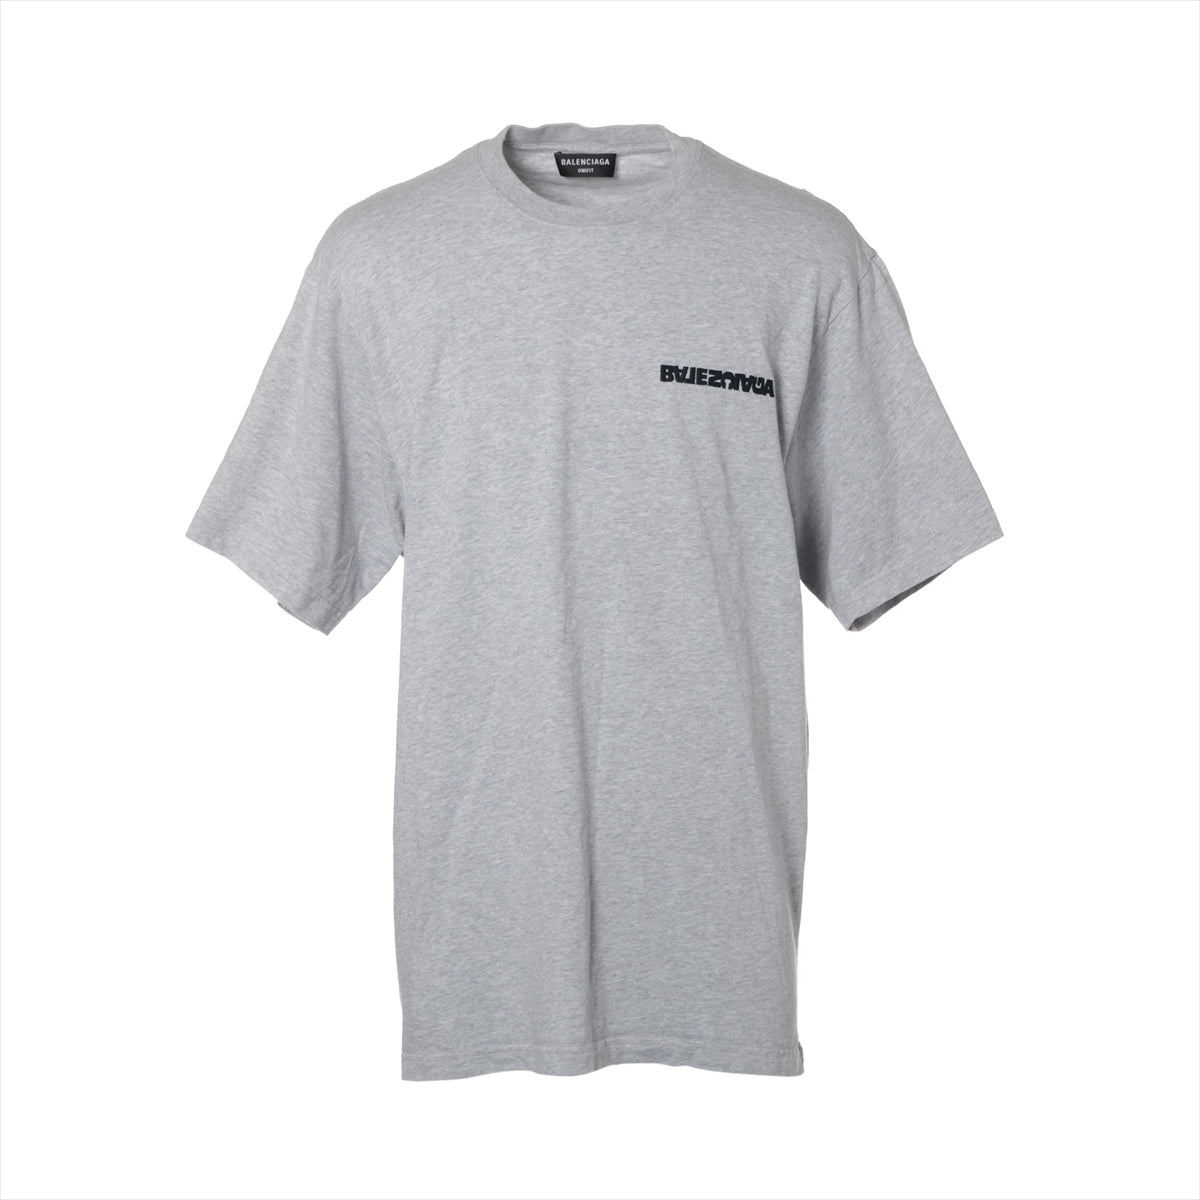 バレンシアガ 21年 コットン Tシャツ 2 メンズ グレー  ターニングロゴ 675016